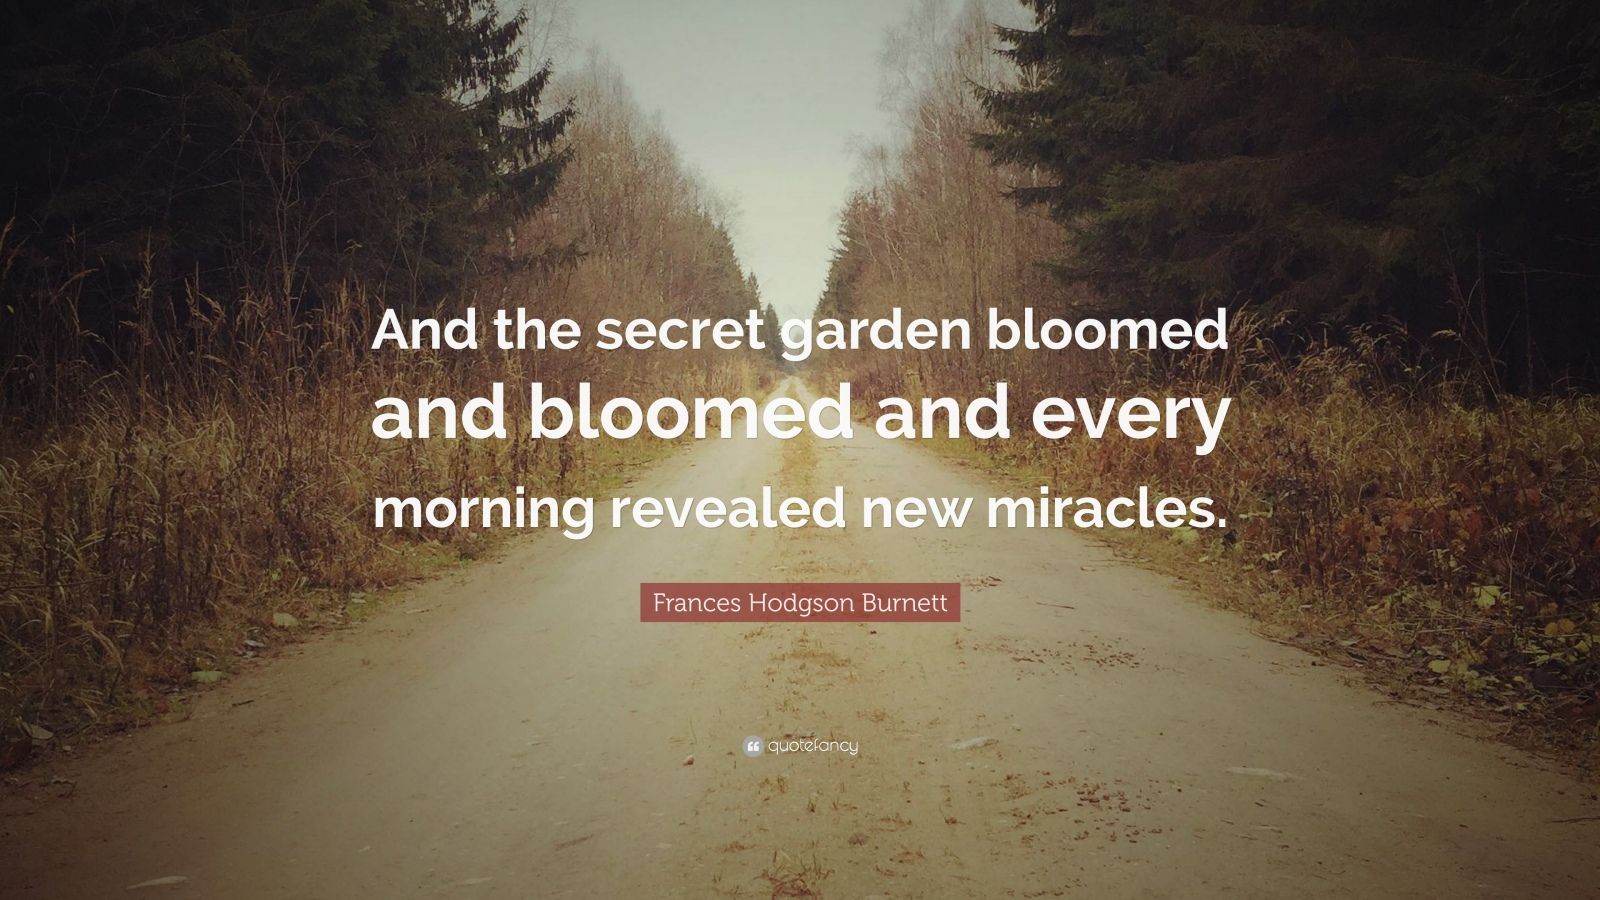 Frances Hodgson Quote “And the secret garden